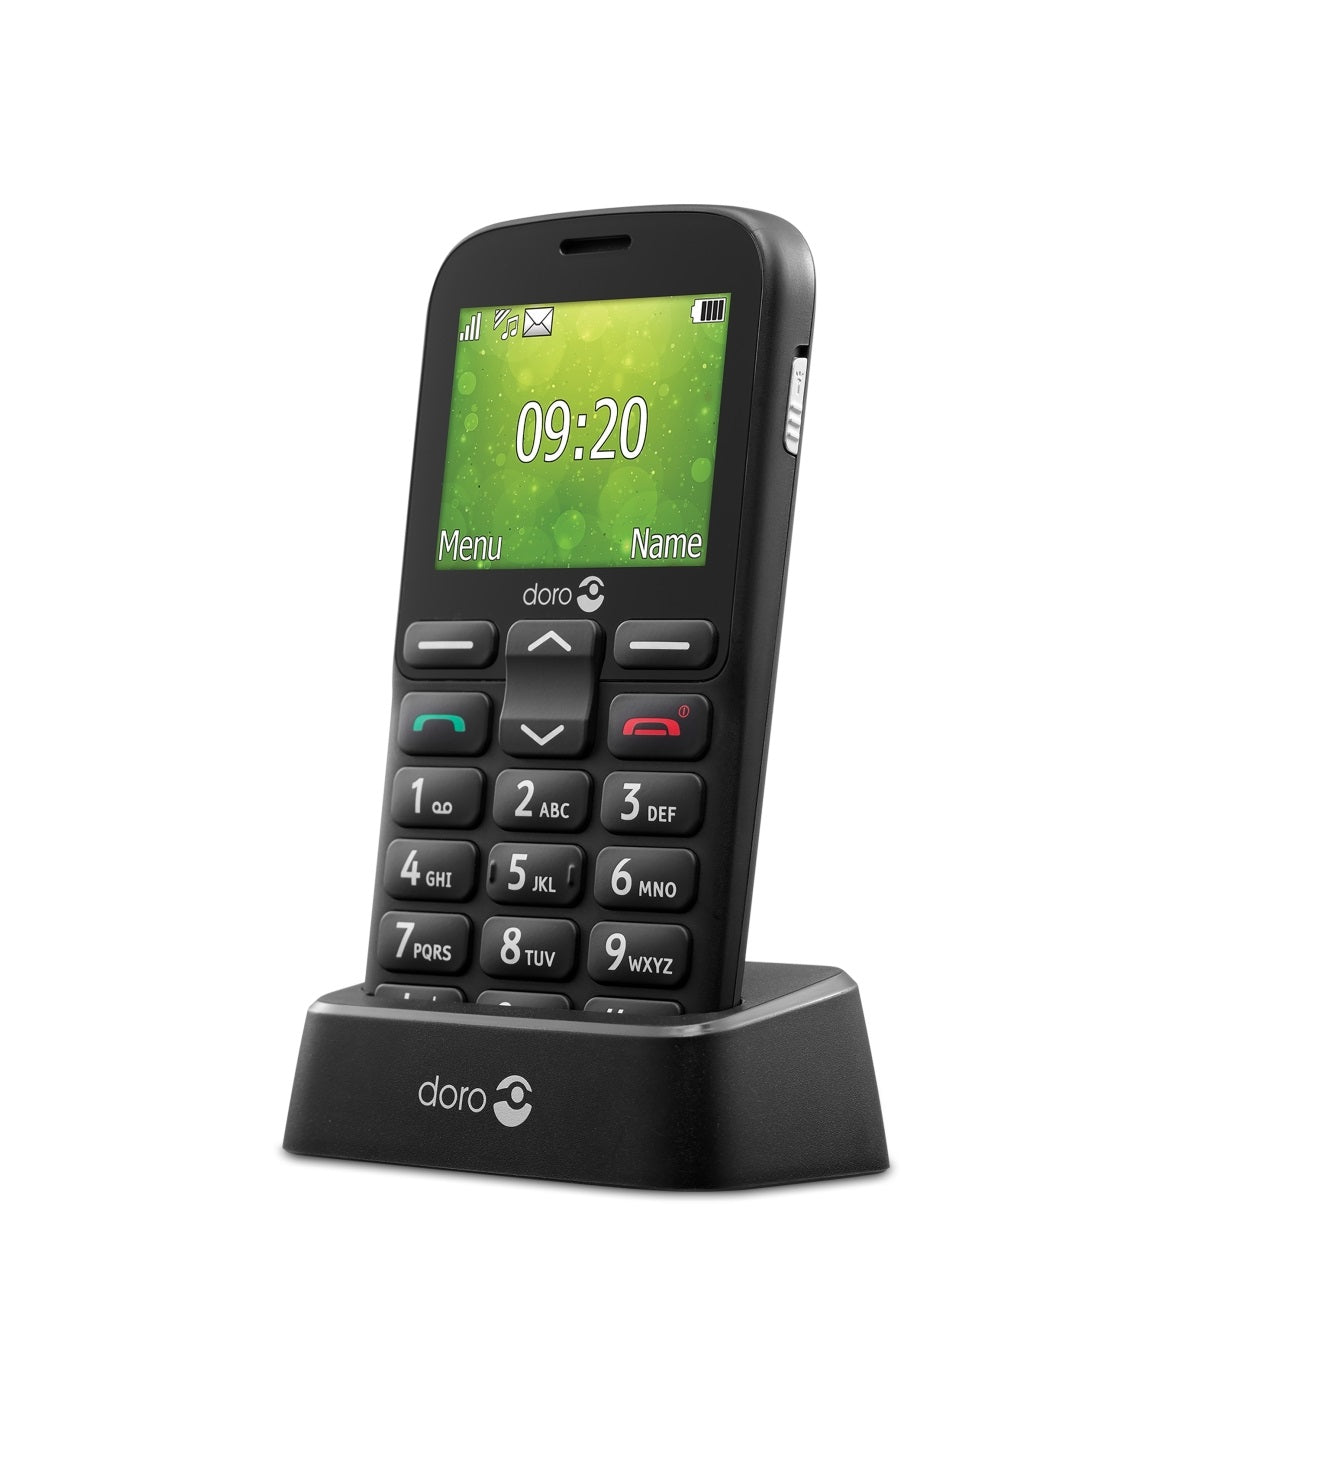 Doro Mobiele Senioren GSM 1381 2G Kopen van  Doro?- Vanaf €63.95 bij Pucshop.nl